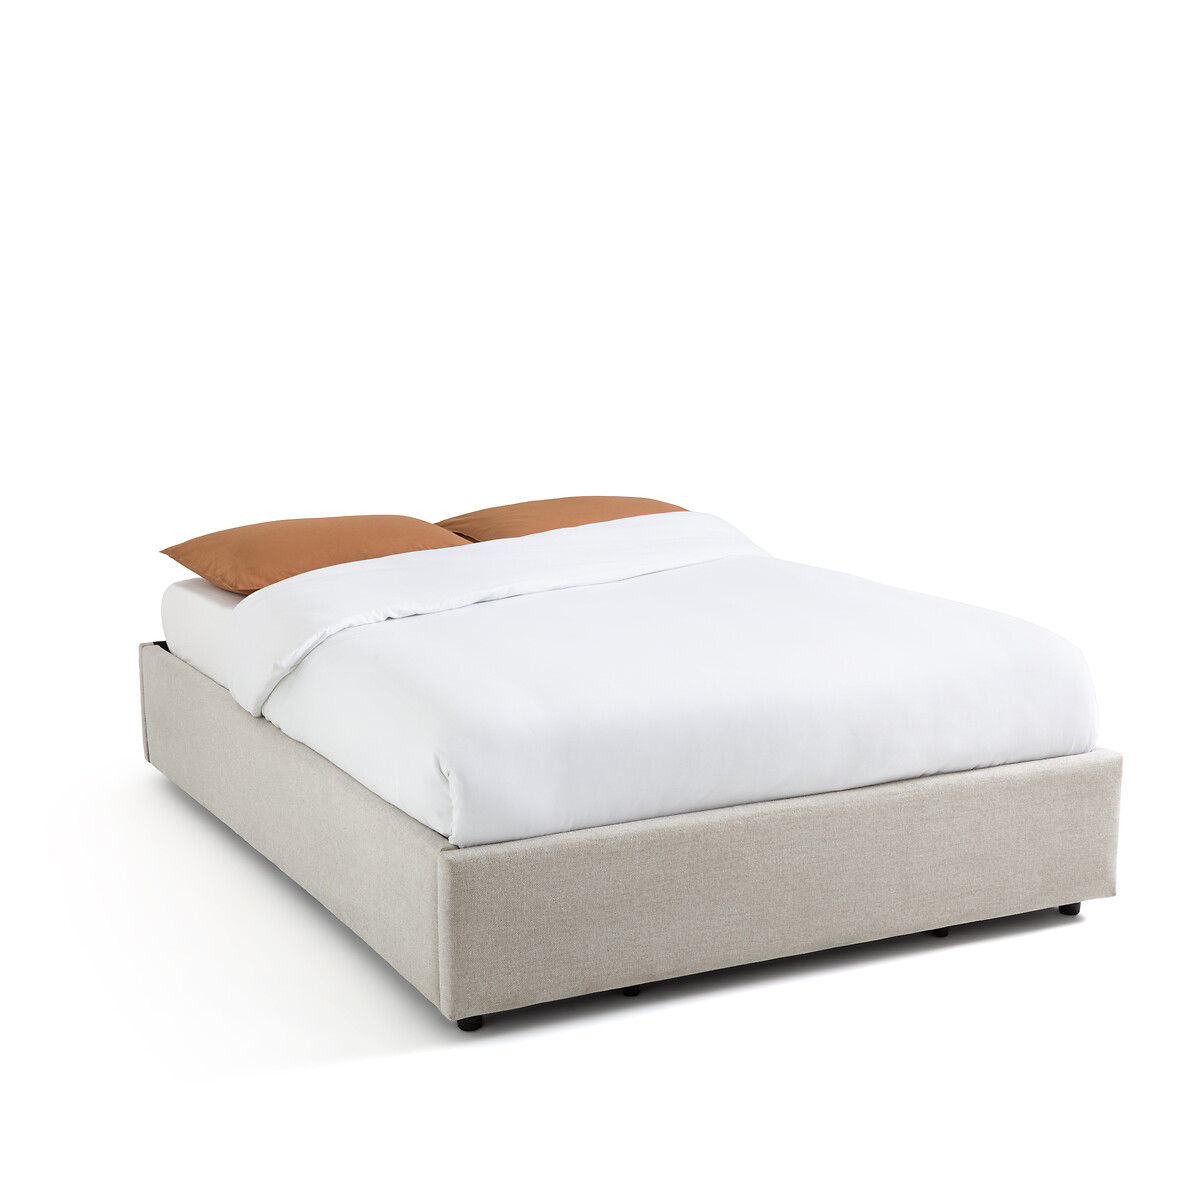 Кровать С реечным дном и ящиком внутри Papilla 160 x 200 см бежевый LaRedoute, размер 160 x 200 см - фото 2